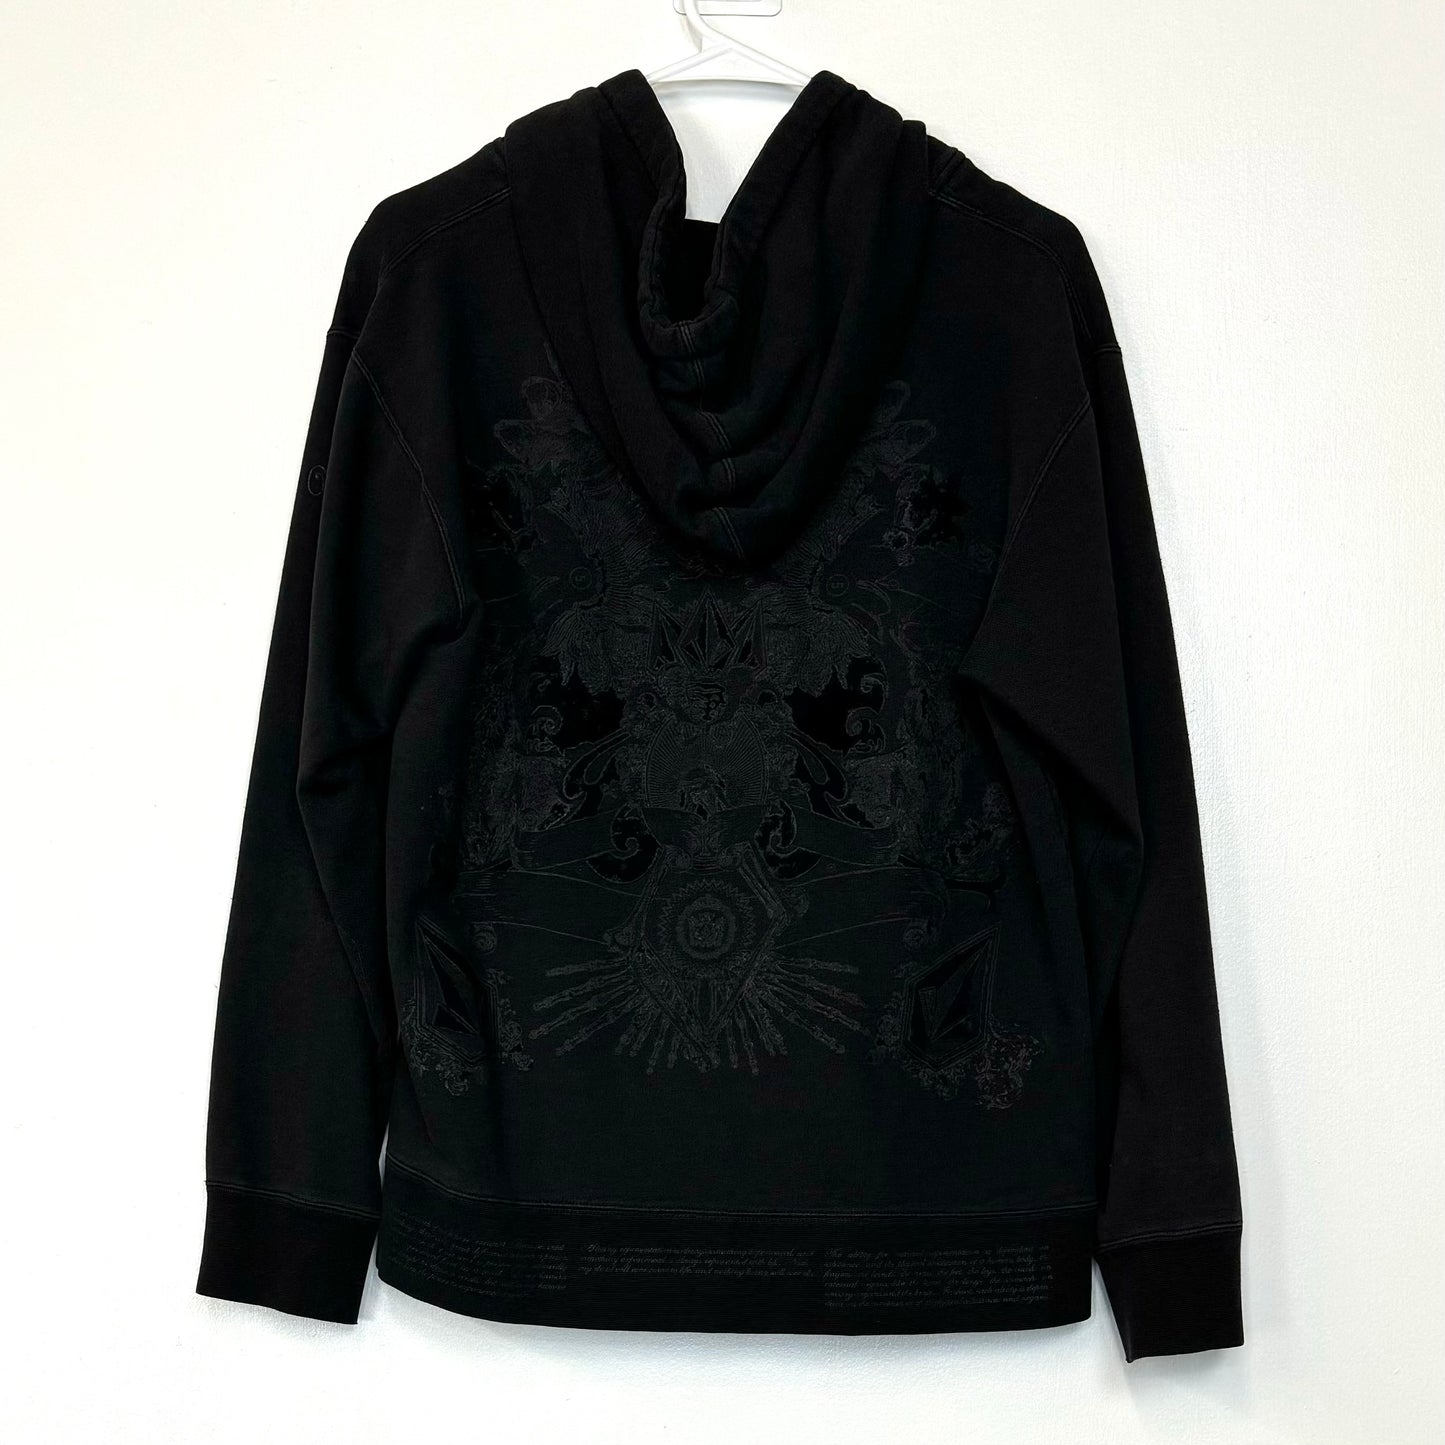 Volcom | Velvet Logo Hooded Full-Zip Sweatshirt | Color: Black | Size: M | Pre-Owned/Vintage